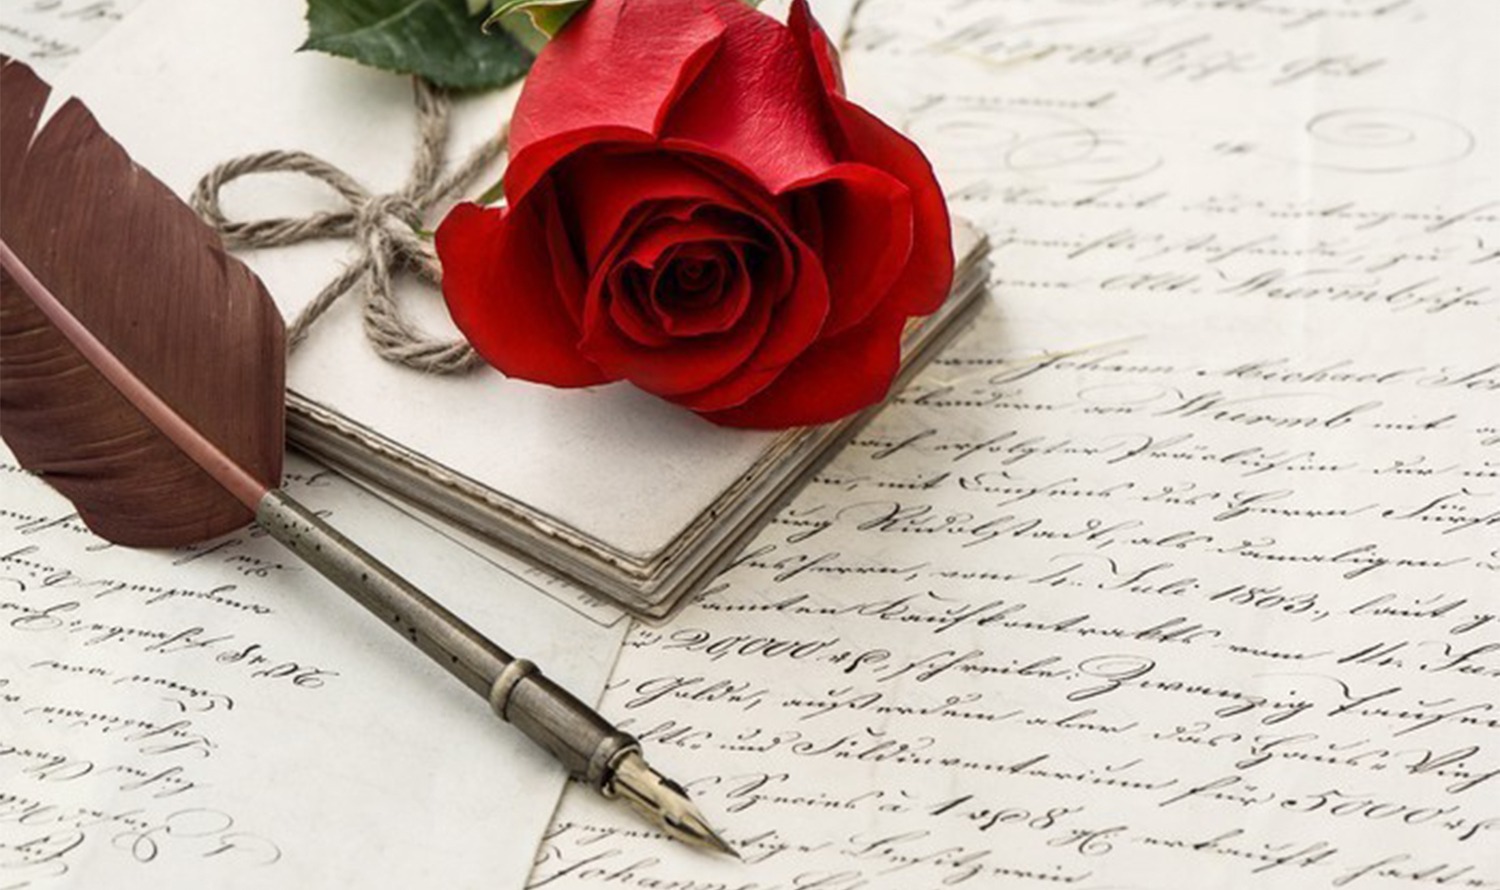 На картине изображена красная роза, старая перьевая ручка и несколько рукописных букв, создающих ностальгическую атмосферу.